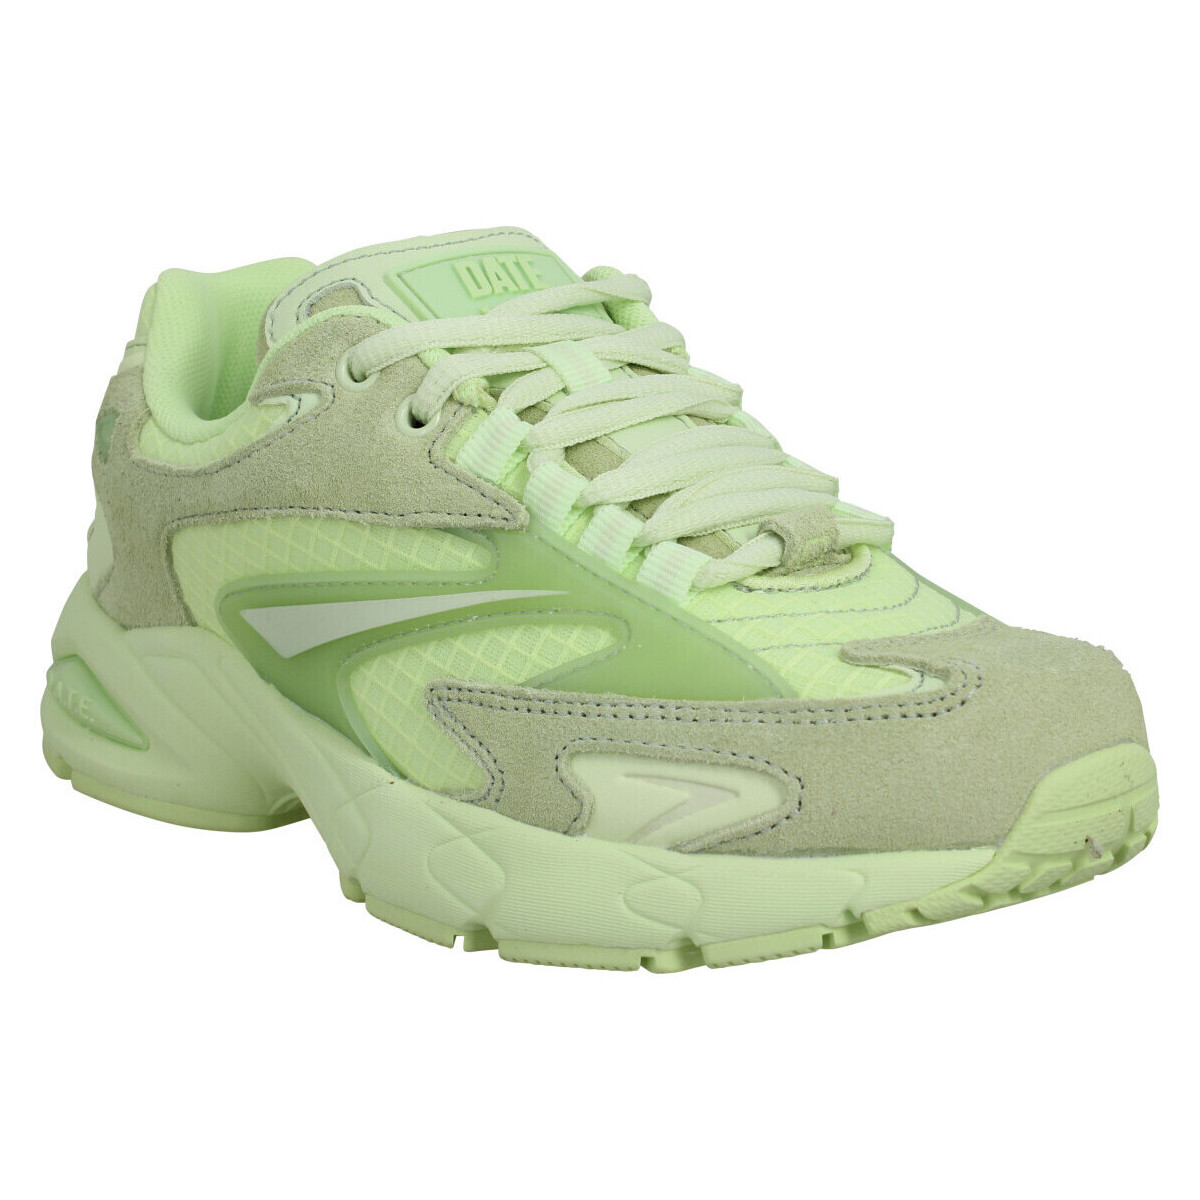 Παπούτσια Γυναίκα Sneakers Date Date Sneakers Sn23 Velours Toile Femme Green Green